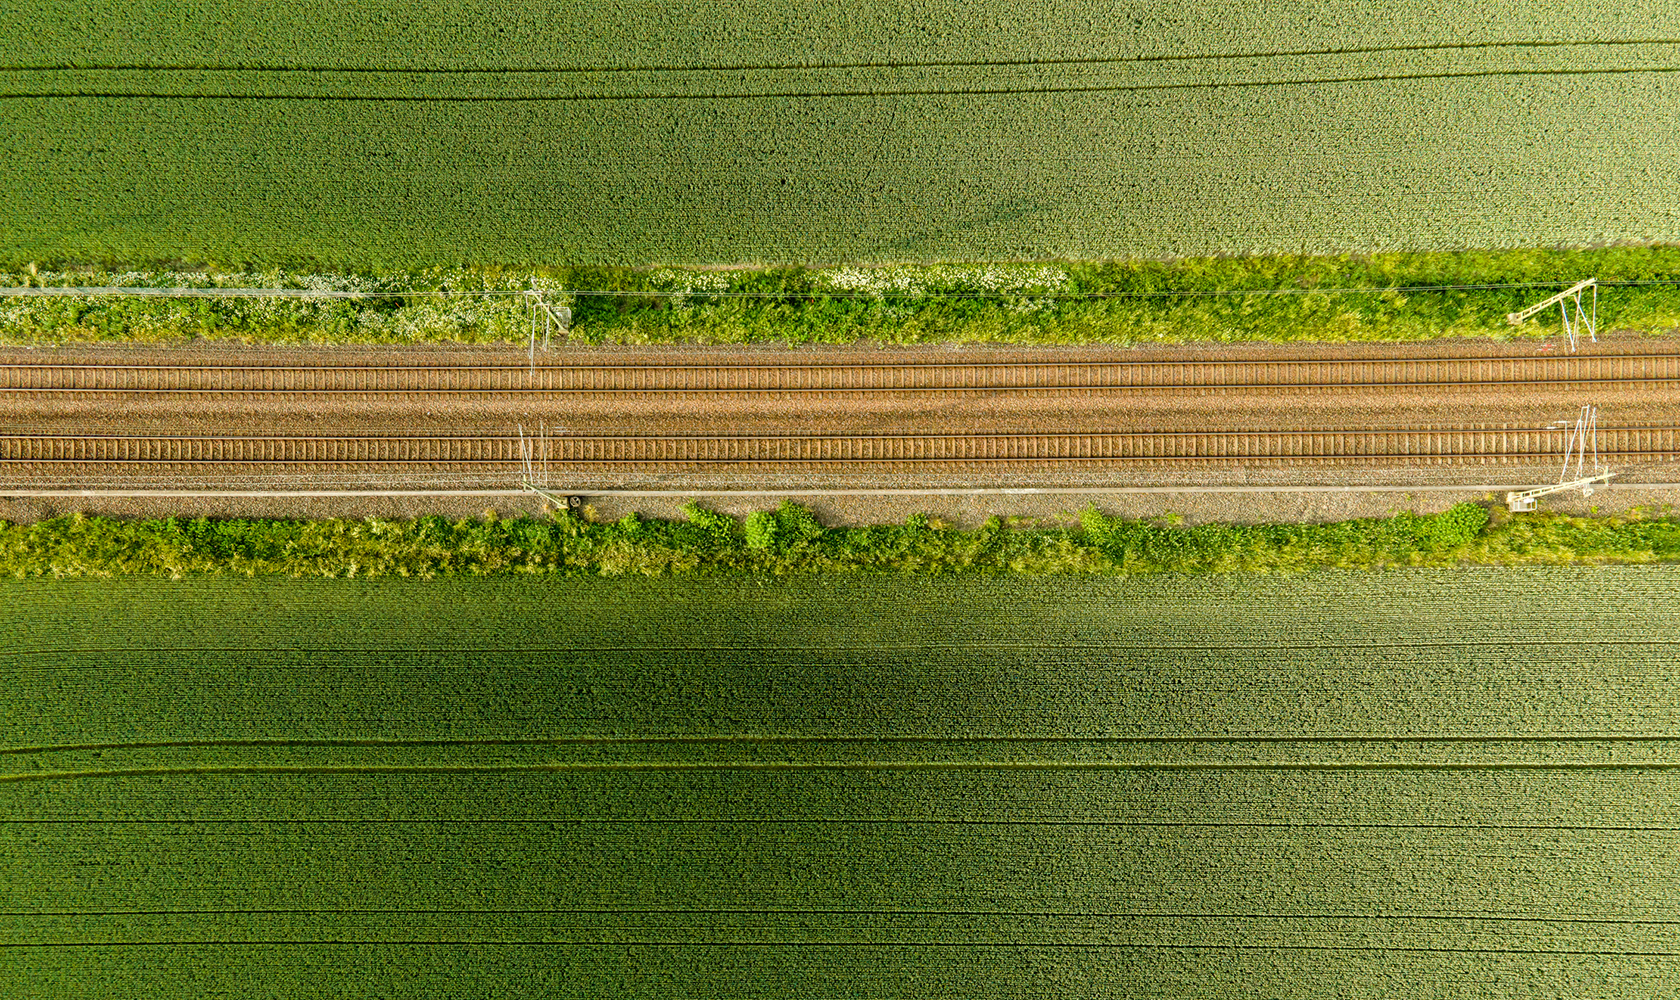 Järnväg i Skåne